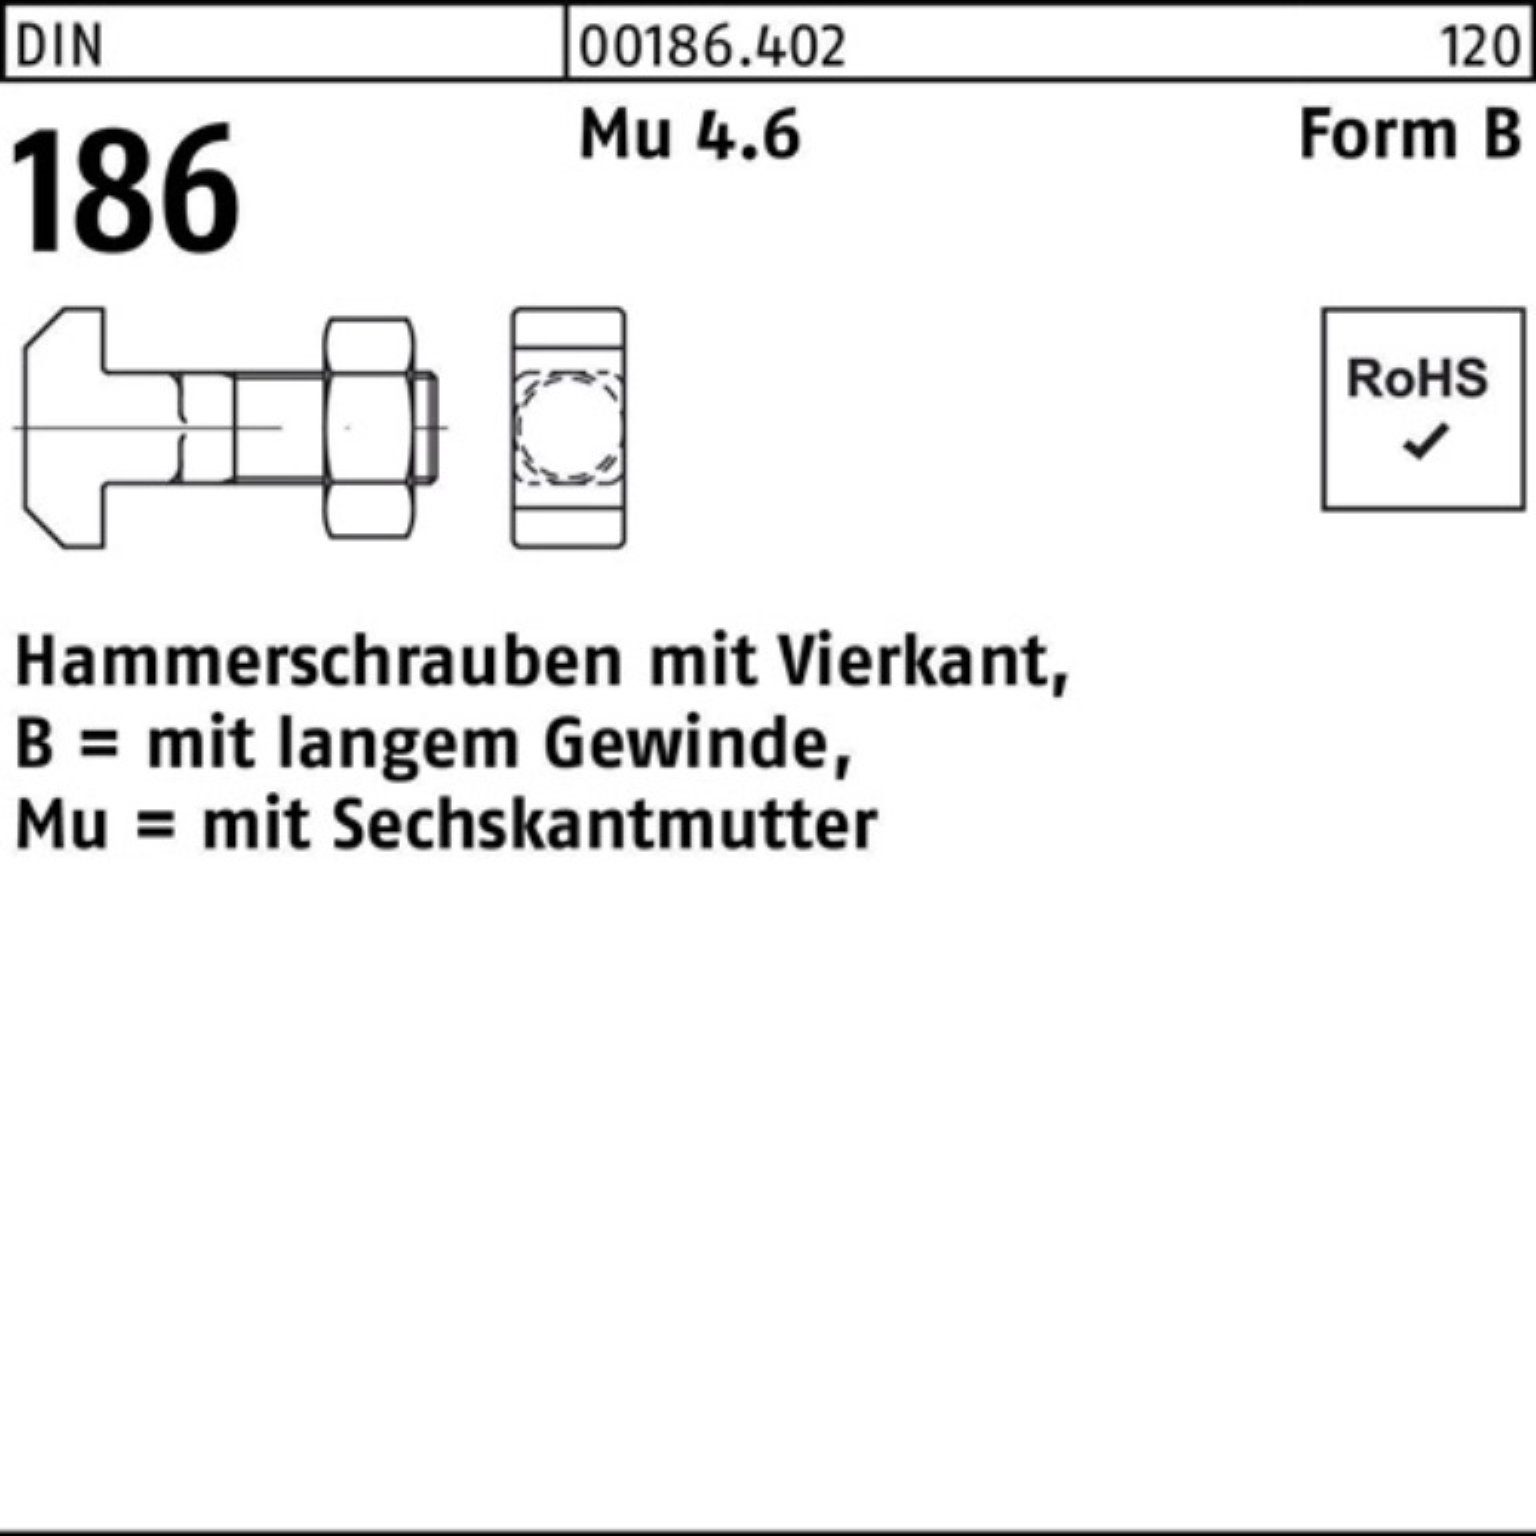 100er Reyher Schraube Hammerschraube DIN BM 6-ktmutter 25 Vierkant 186 FormB 10x Pack